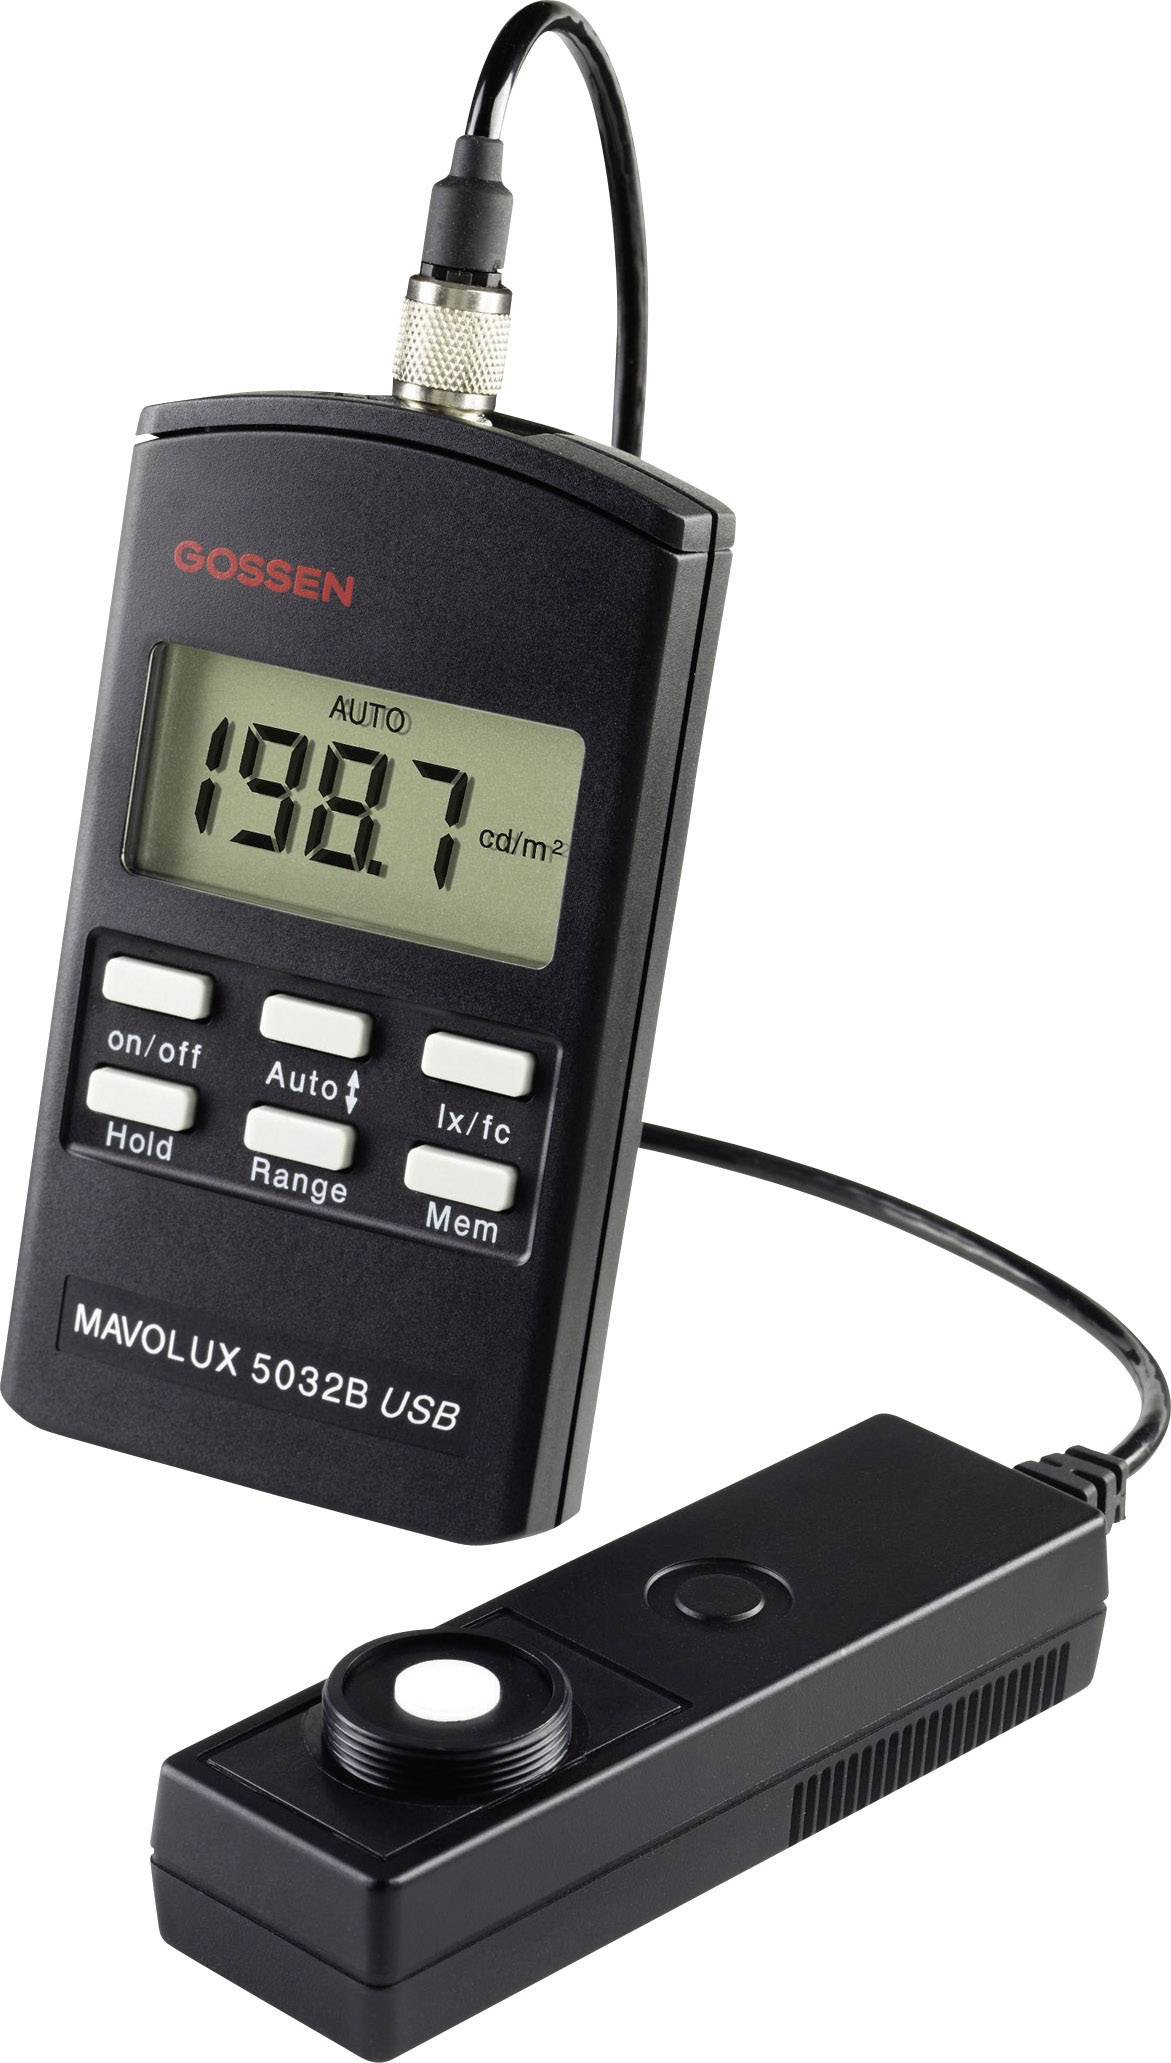 GOSSEN MAVOLUX 5032 B USB Lux-Meter, Beleuchtungsmessgerät, Helligkeitsmesser 0.01 - 199900 lx -